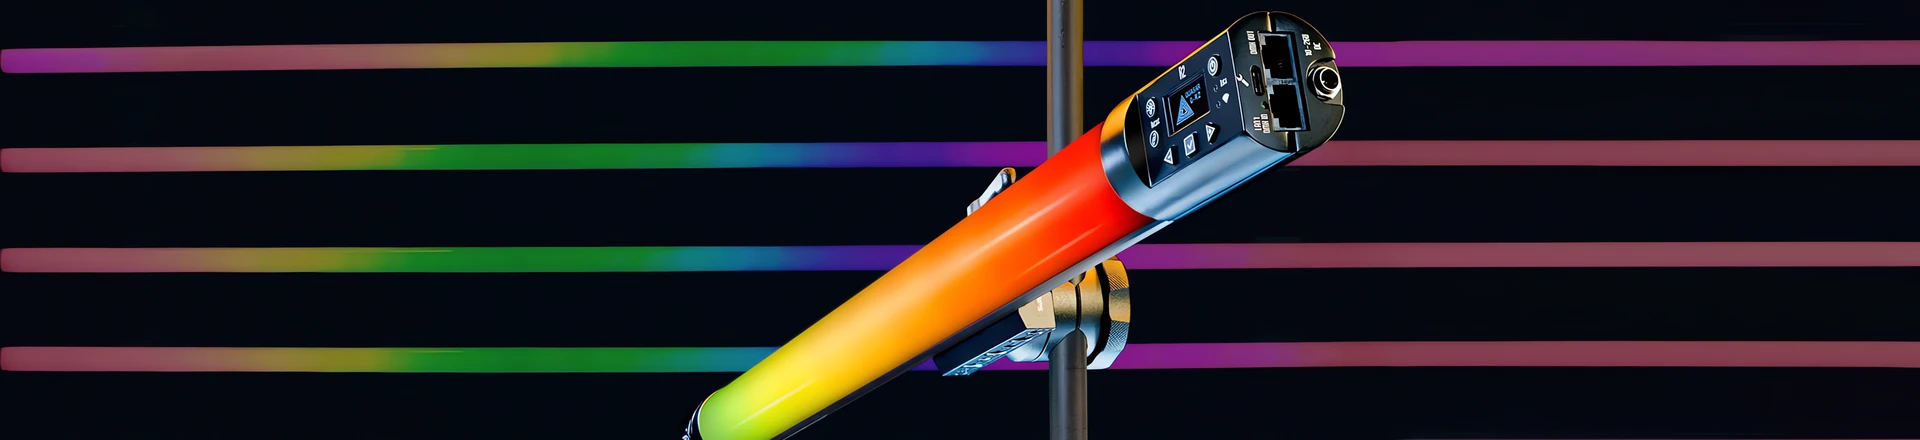 NEWS: Nowe tuby oświetleniowe LED dla twórców treści wideo. Quasar Science Rainbow